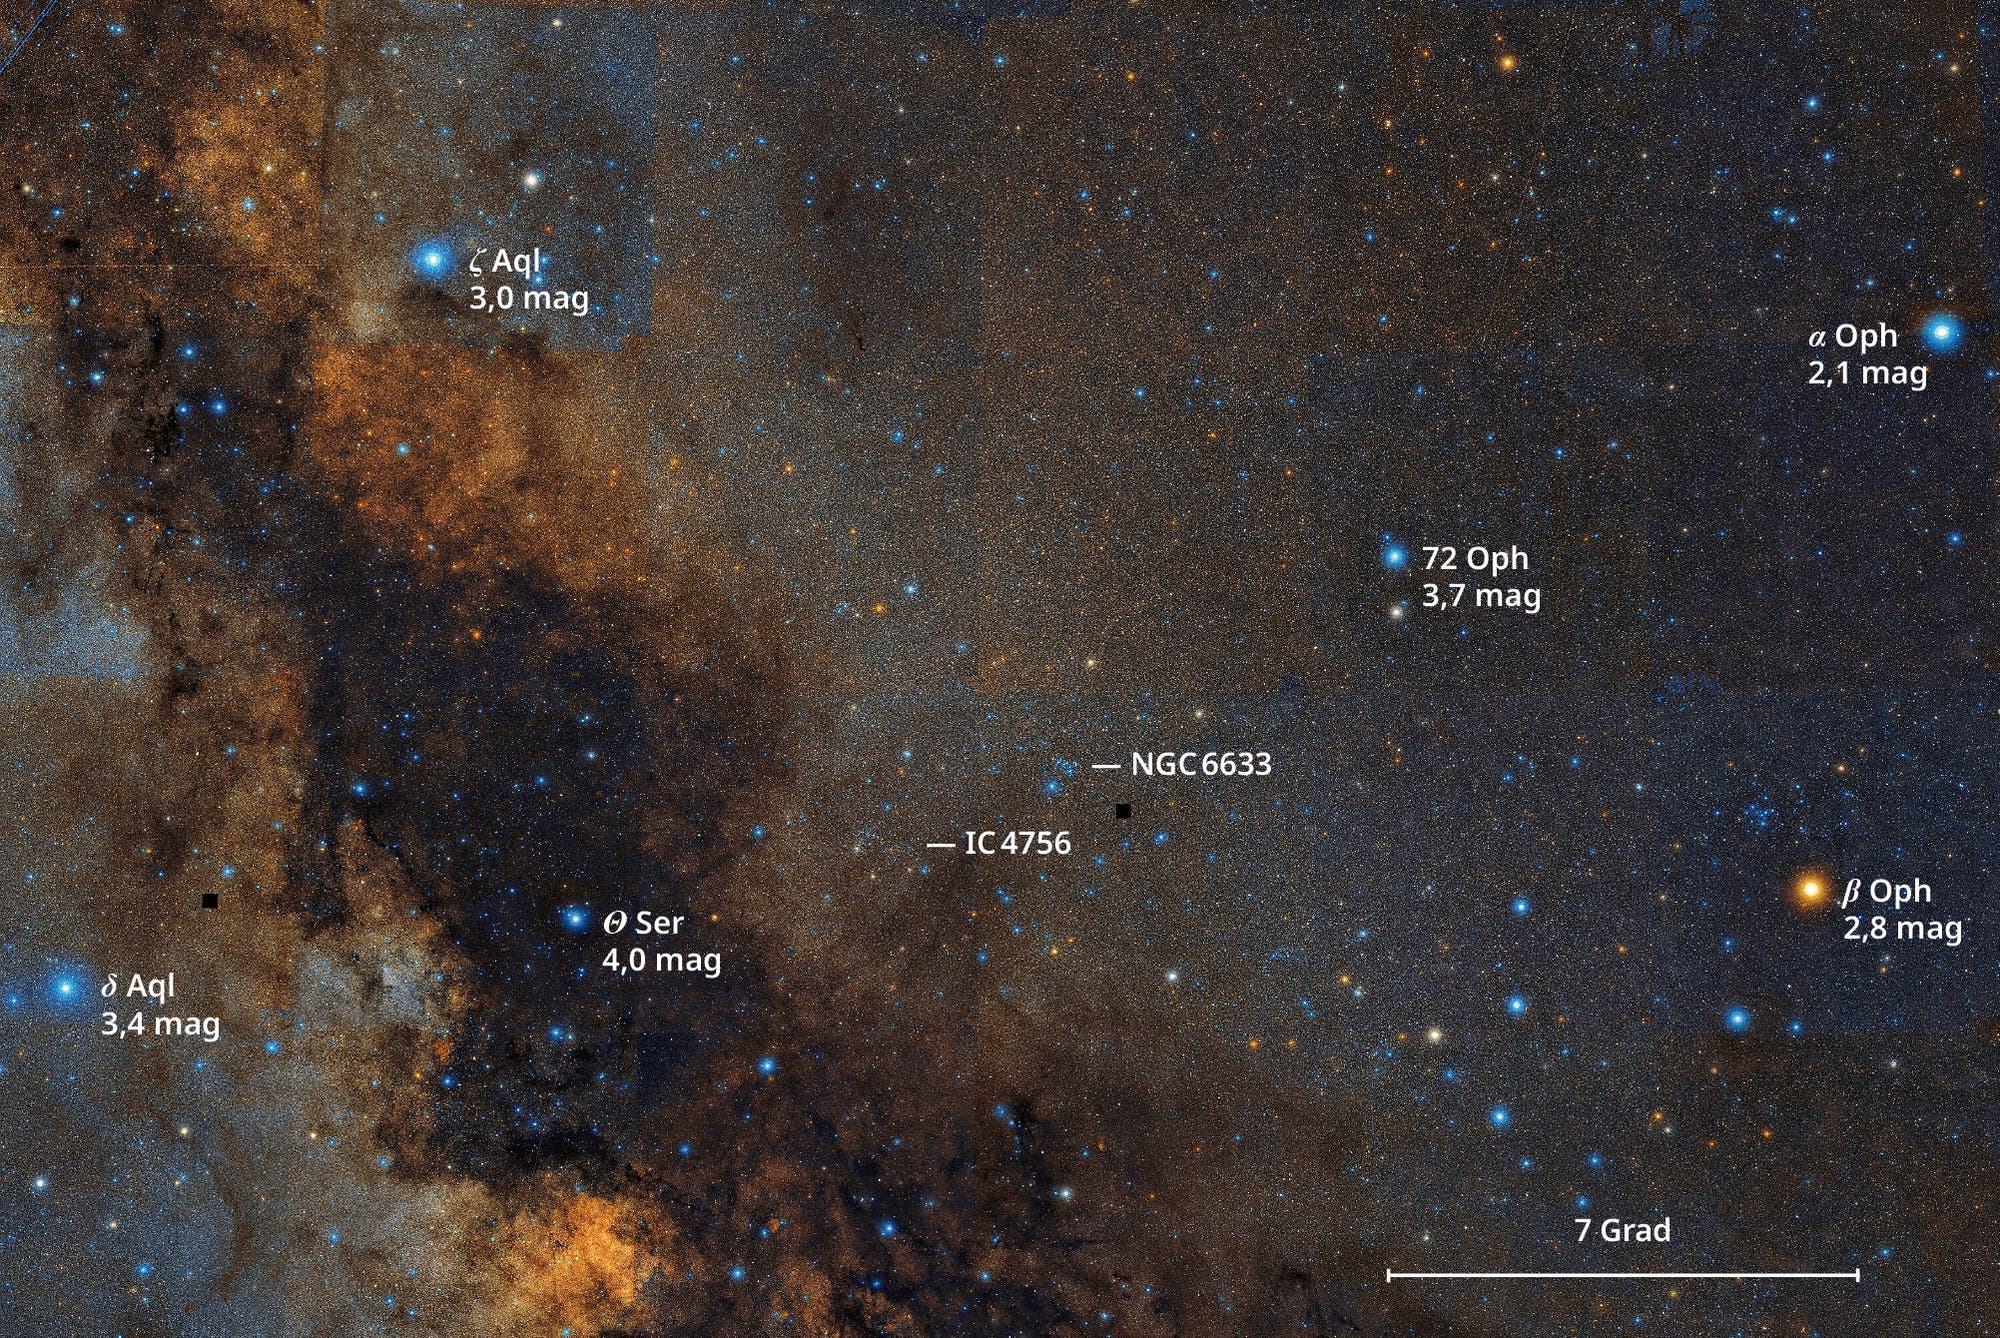 Die benachbarten offenen Sternhaufen IC 4756 und NGC 6633 unterscheiden sich deutlich voneinander.